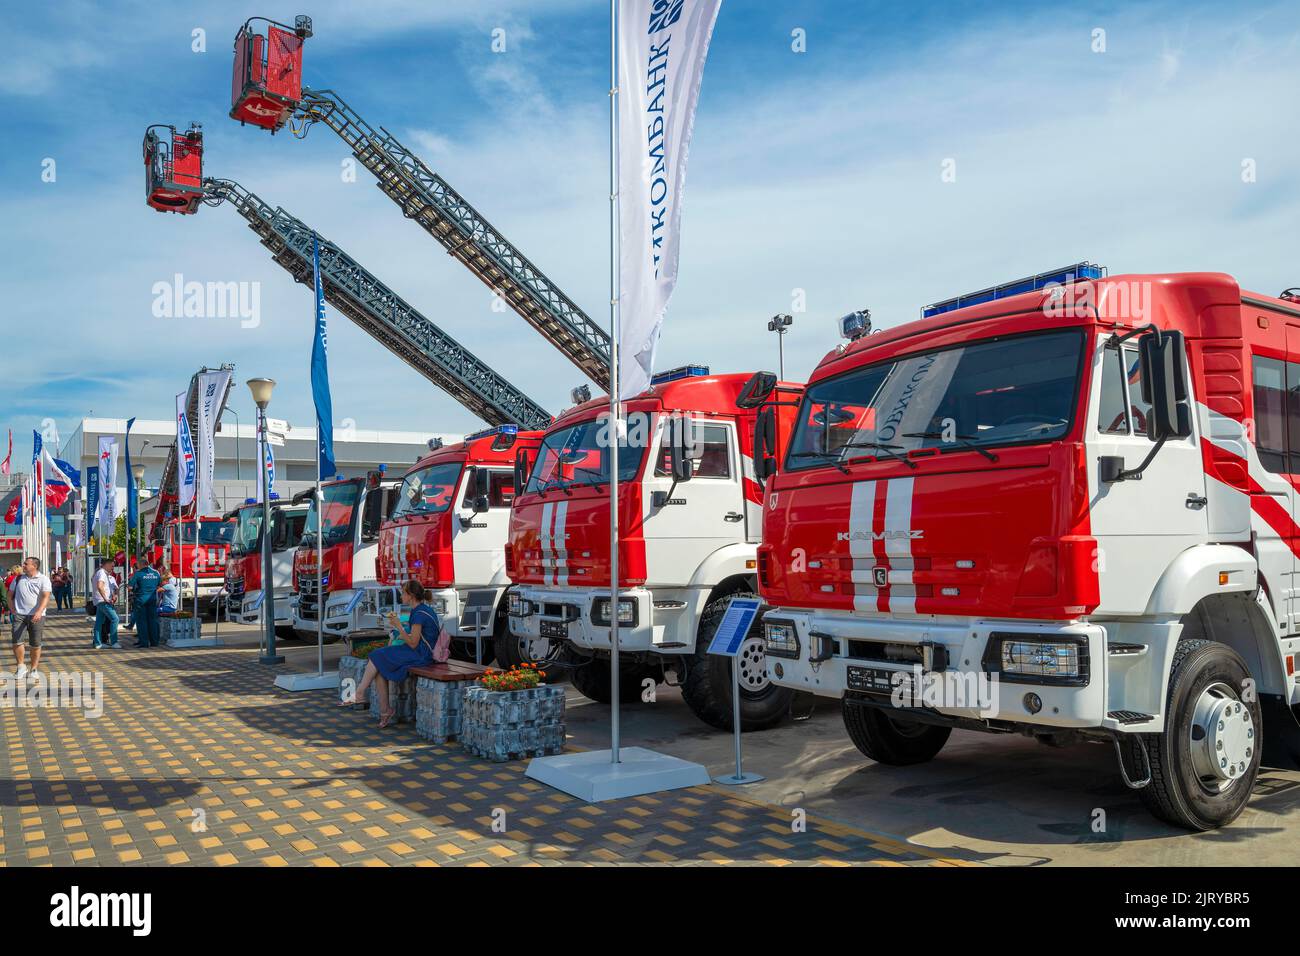 REGION MOSKAU, RUSSLAND - 19. AUGUST 2022: Moderne russische Feuerwehrfahrzeuge in der Ausstellung des internationalen militärtechnischen Forums der 'Army-2022' Stockfoto